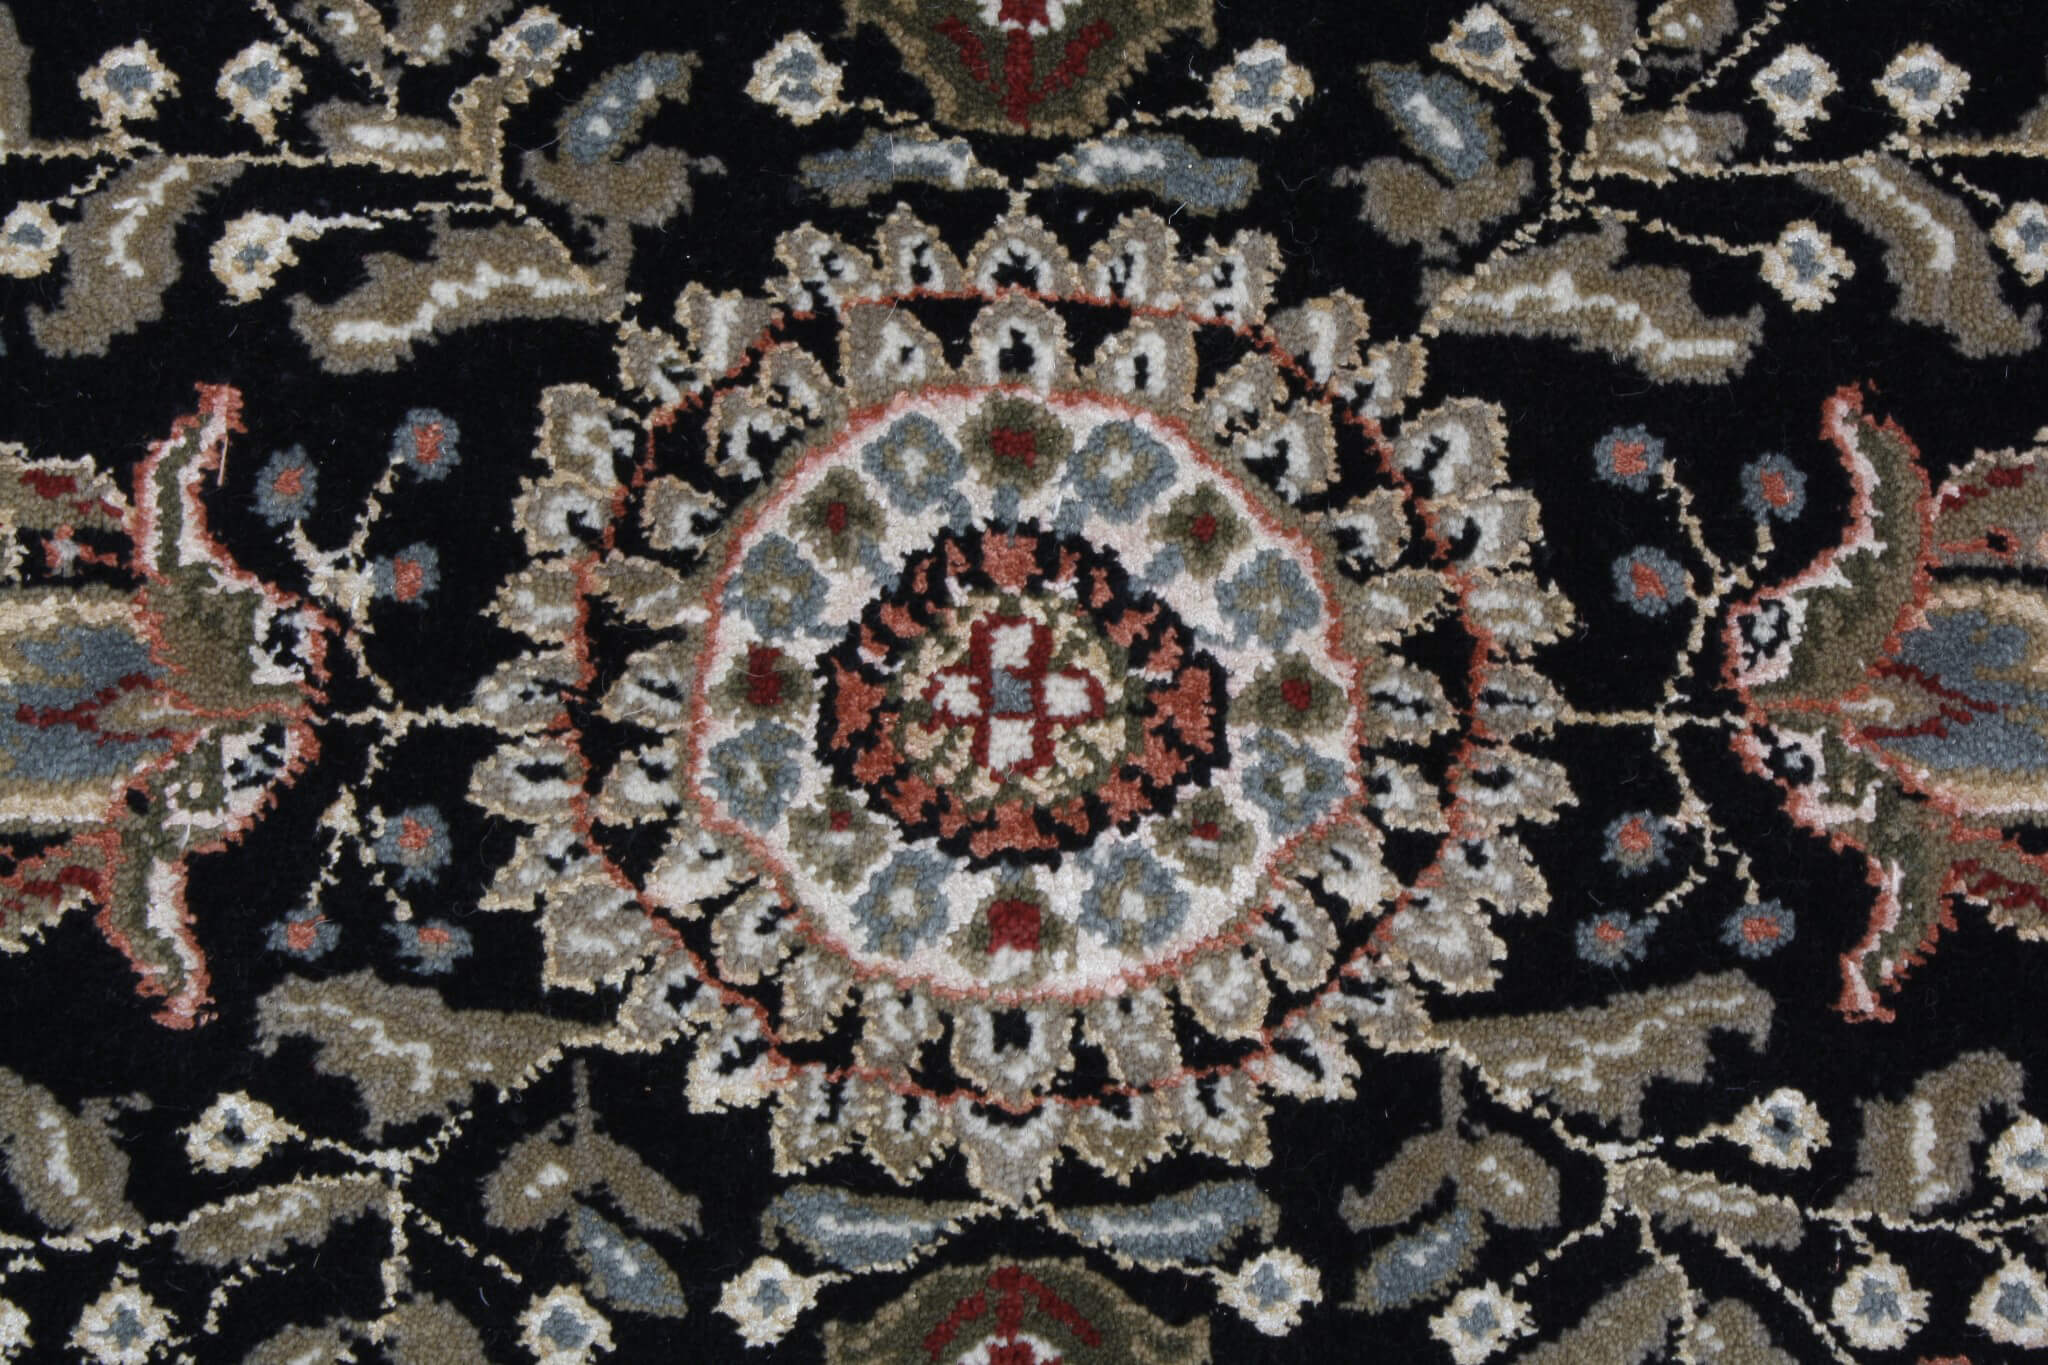 Perský koberec Tabríz Exkluziv